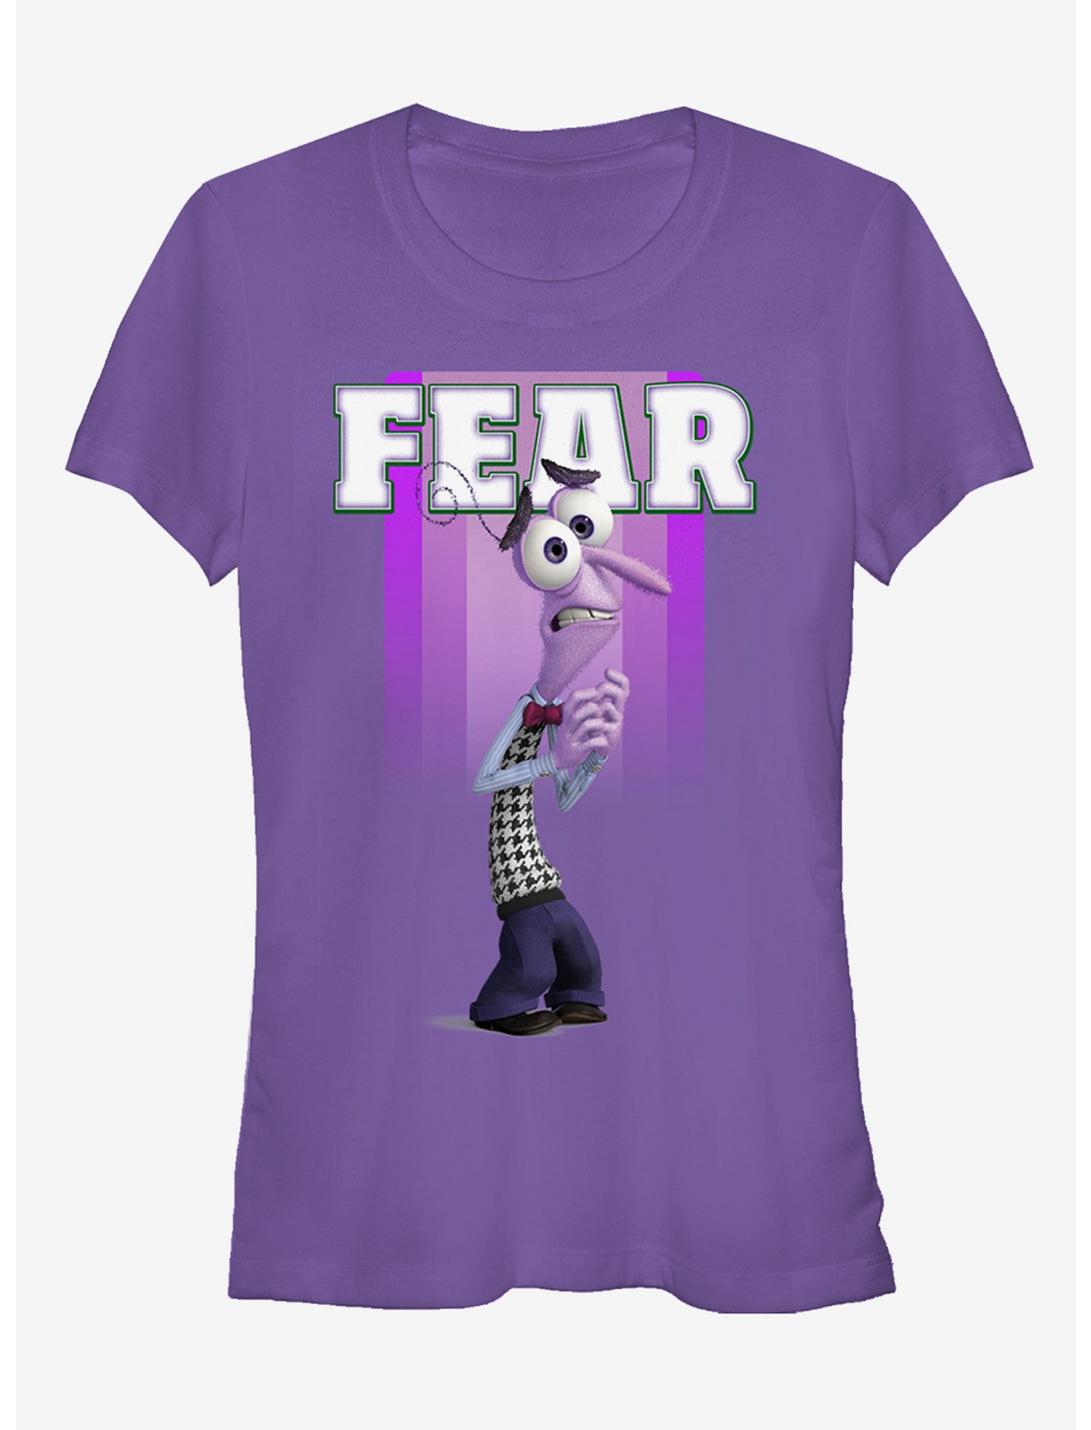 Disney Pixar Inside Out Fear Portrait Girls T-Shirt, PURPLE, hi-res